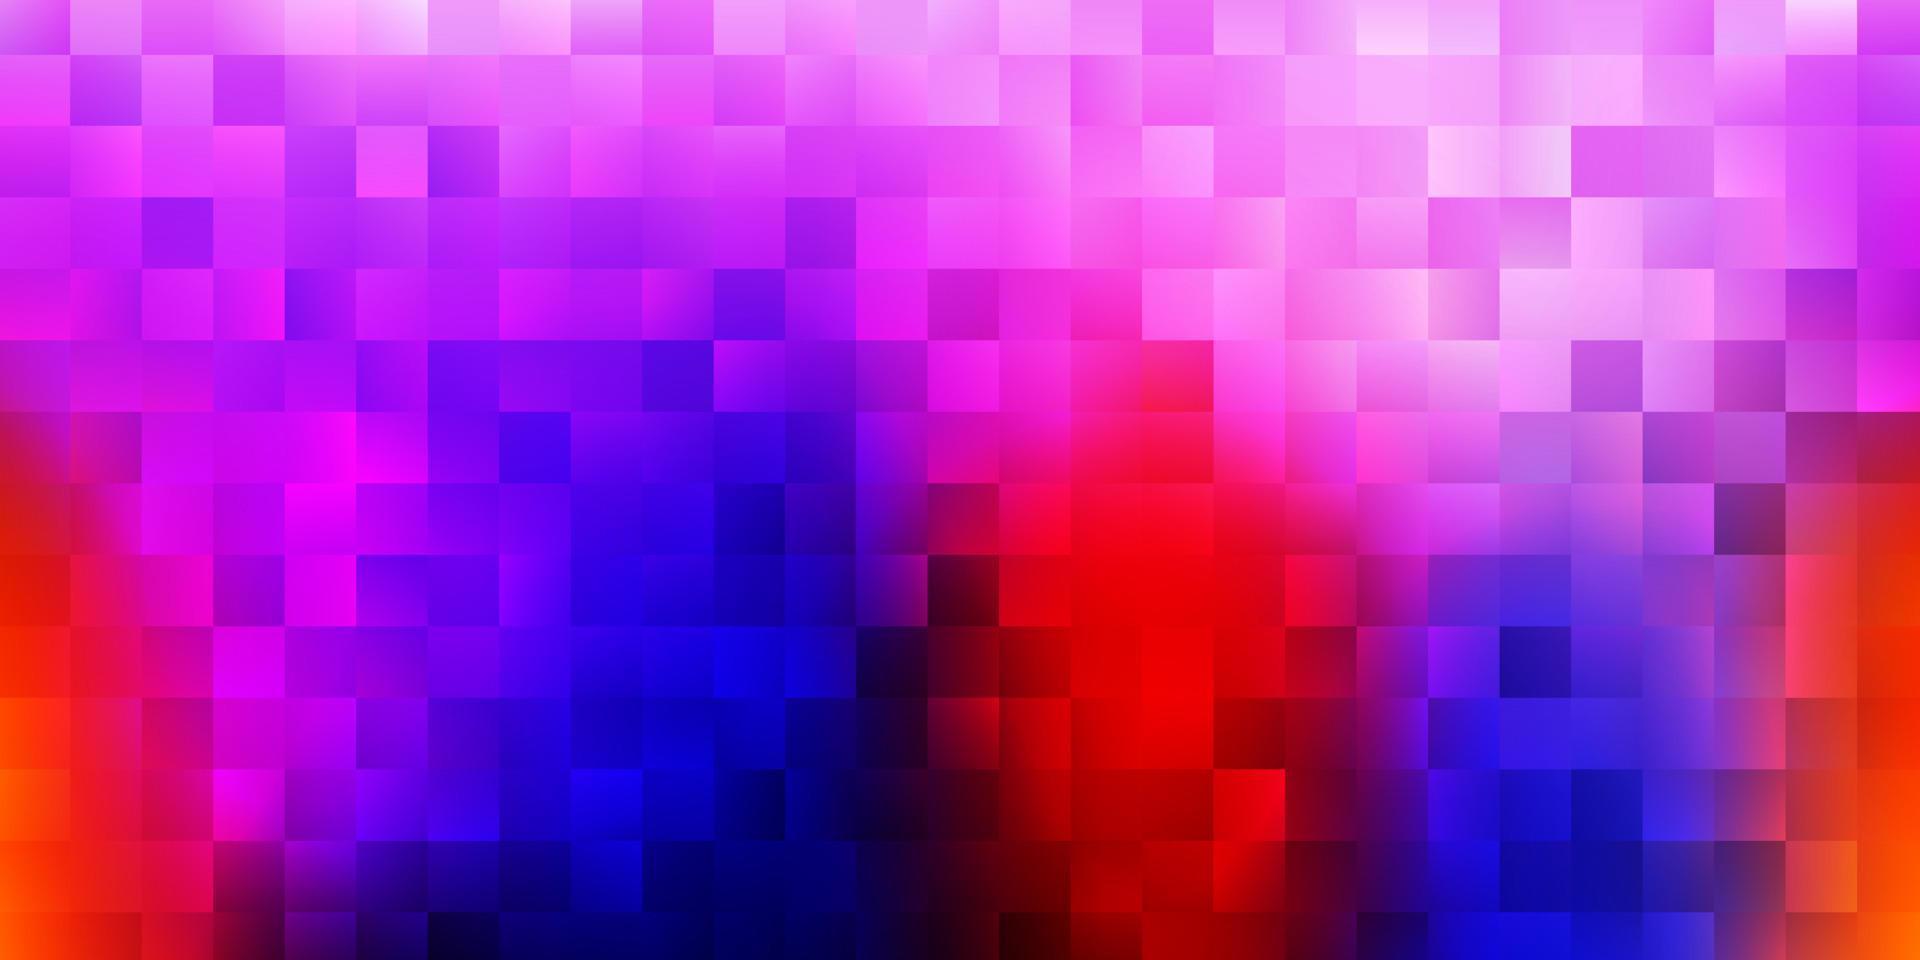 mörkblå, röd vektormönster med rektanglar. vektor